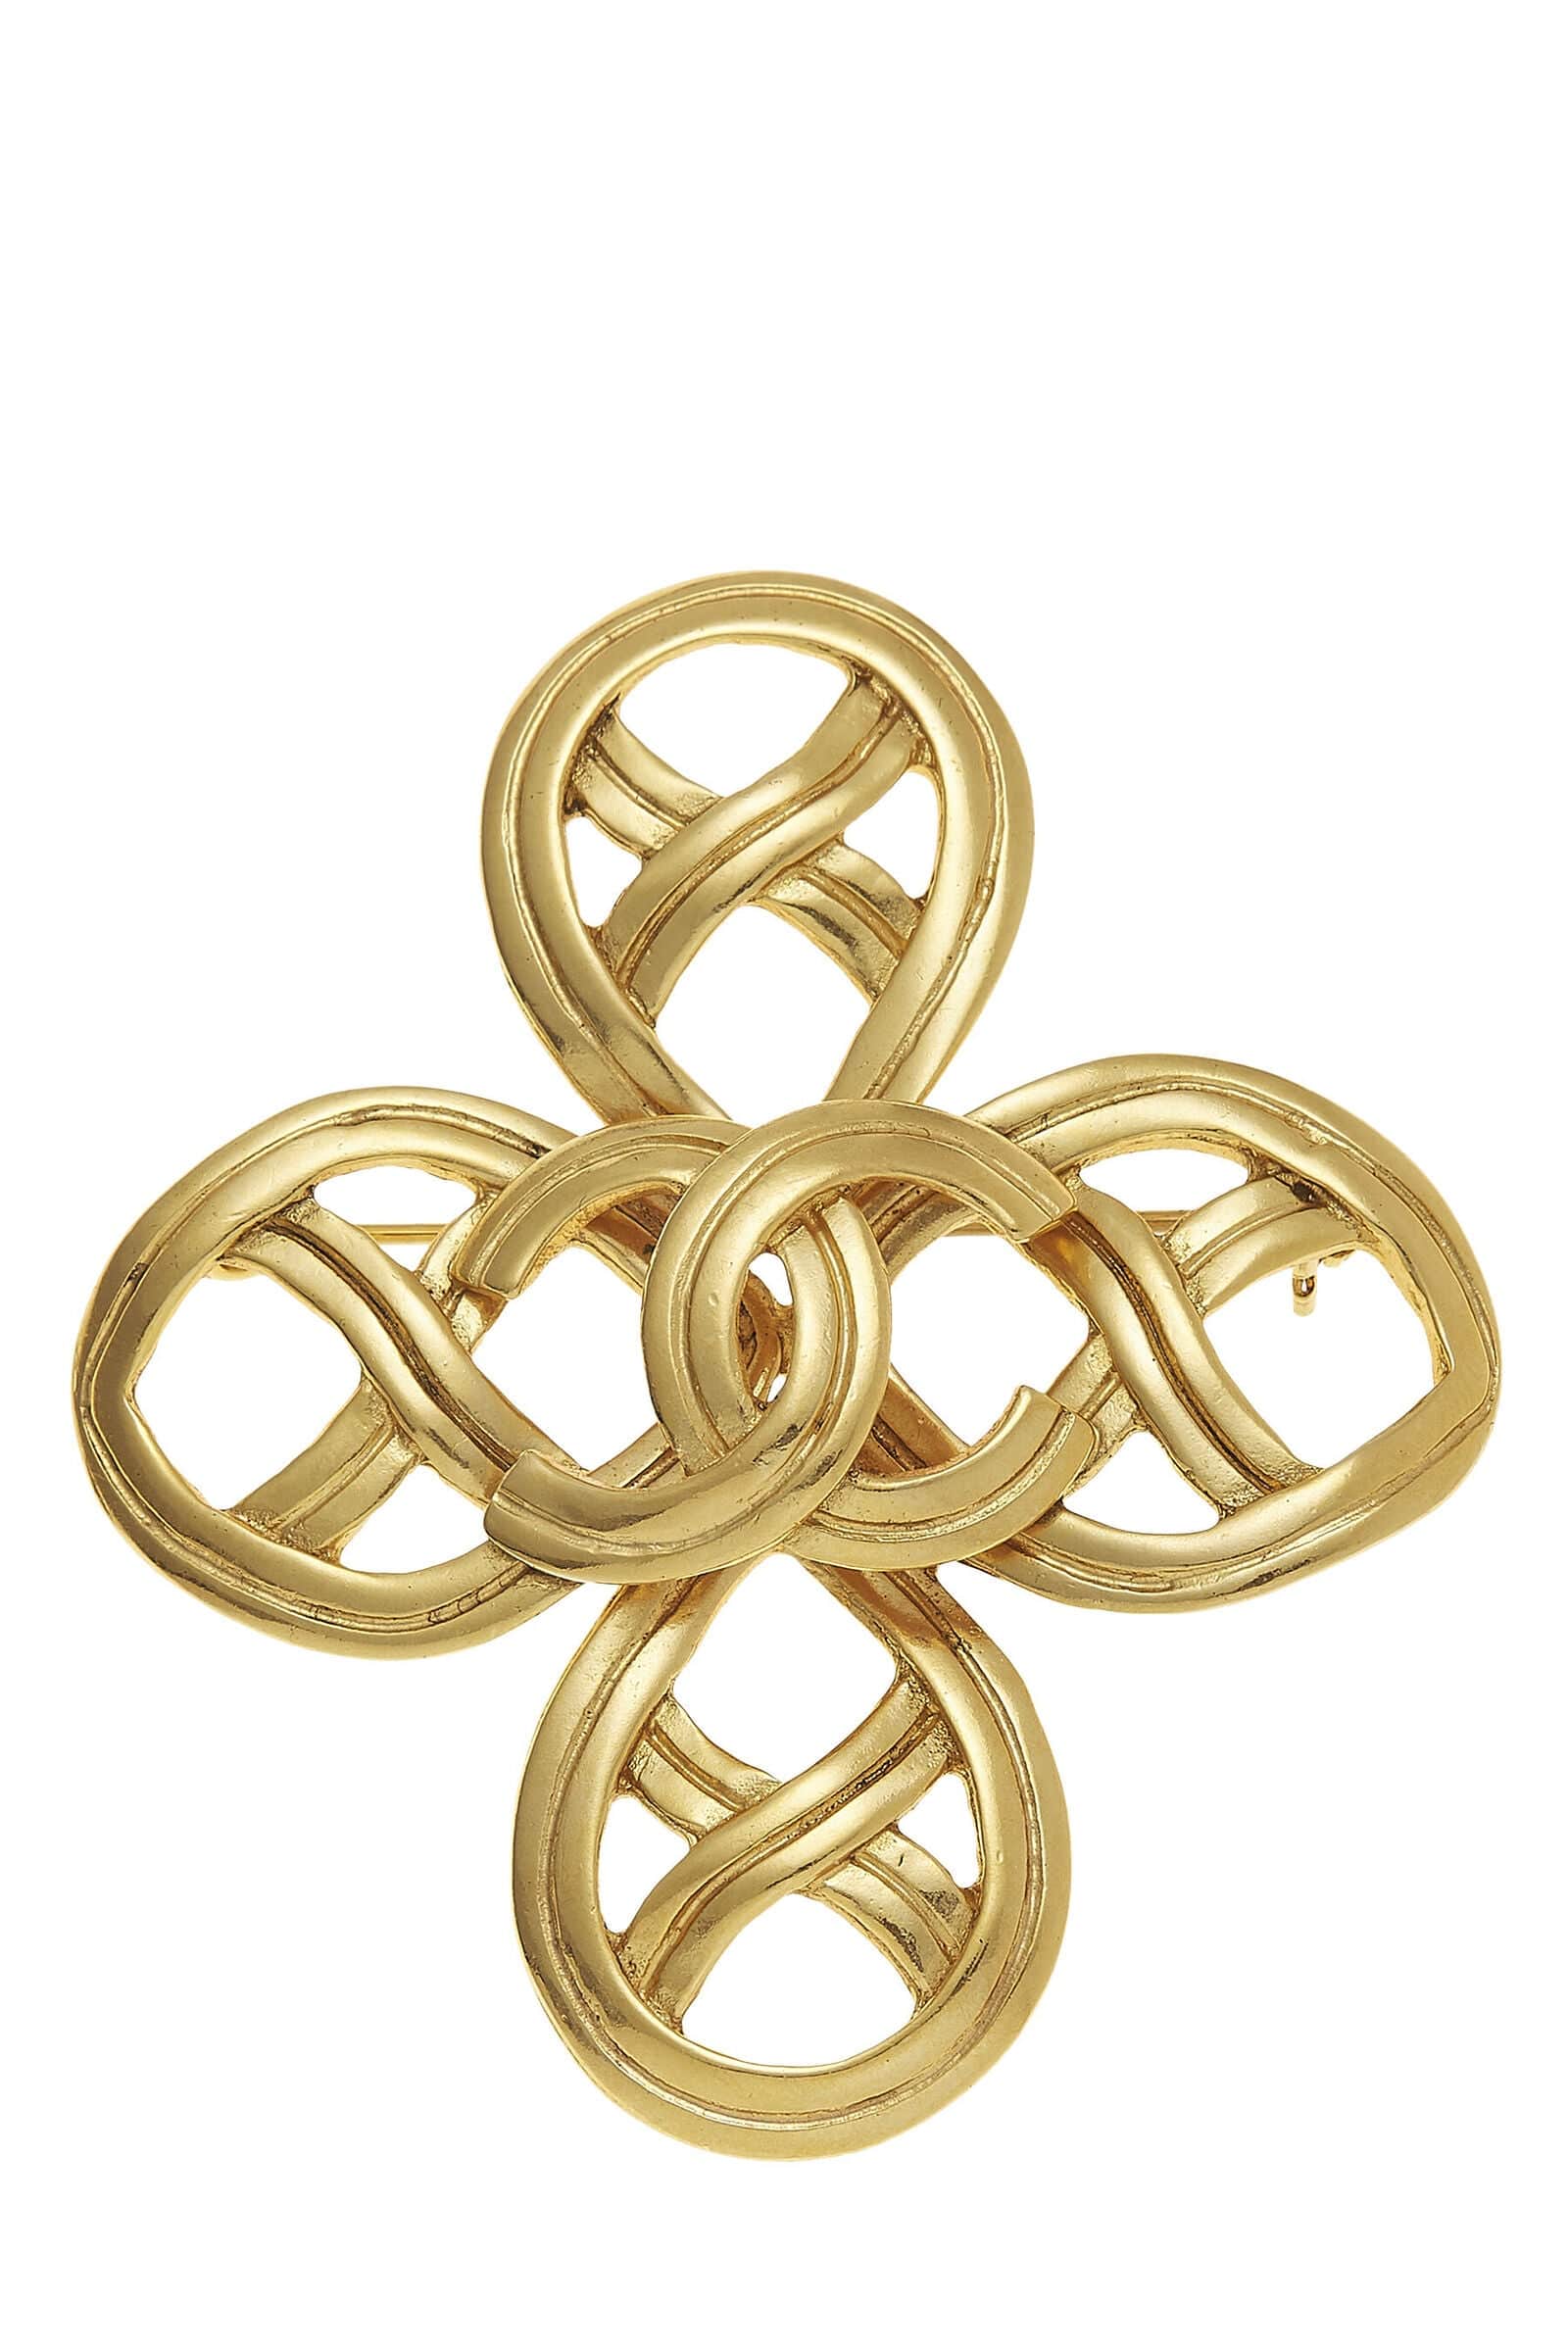 Chanel Chanel Gold Cconcross Pin Q6J1ZH17DB000